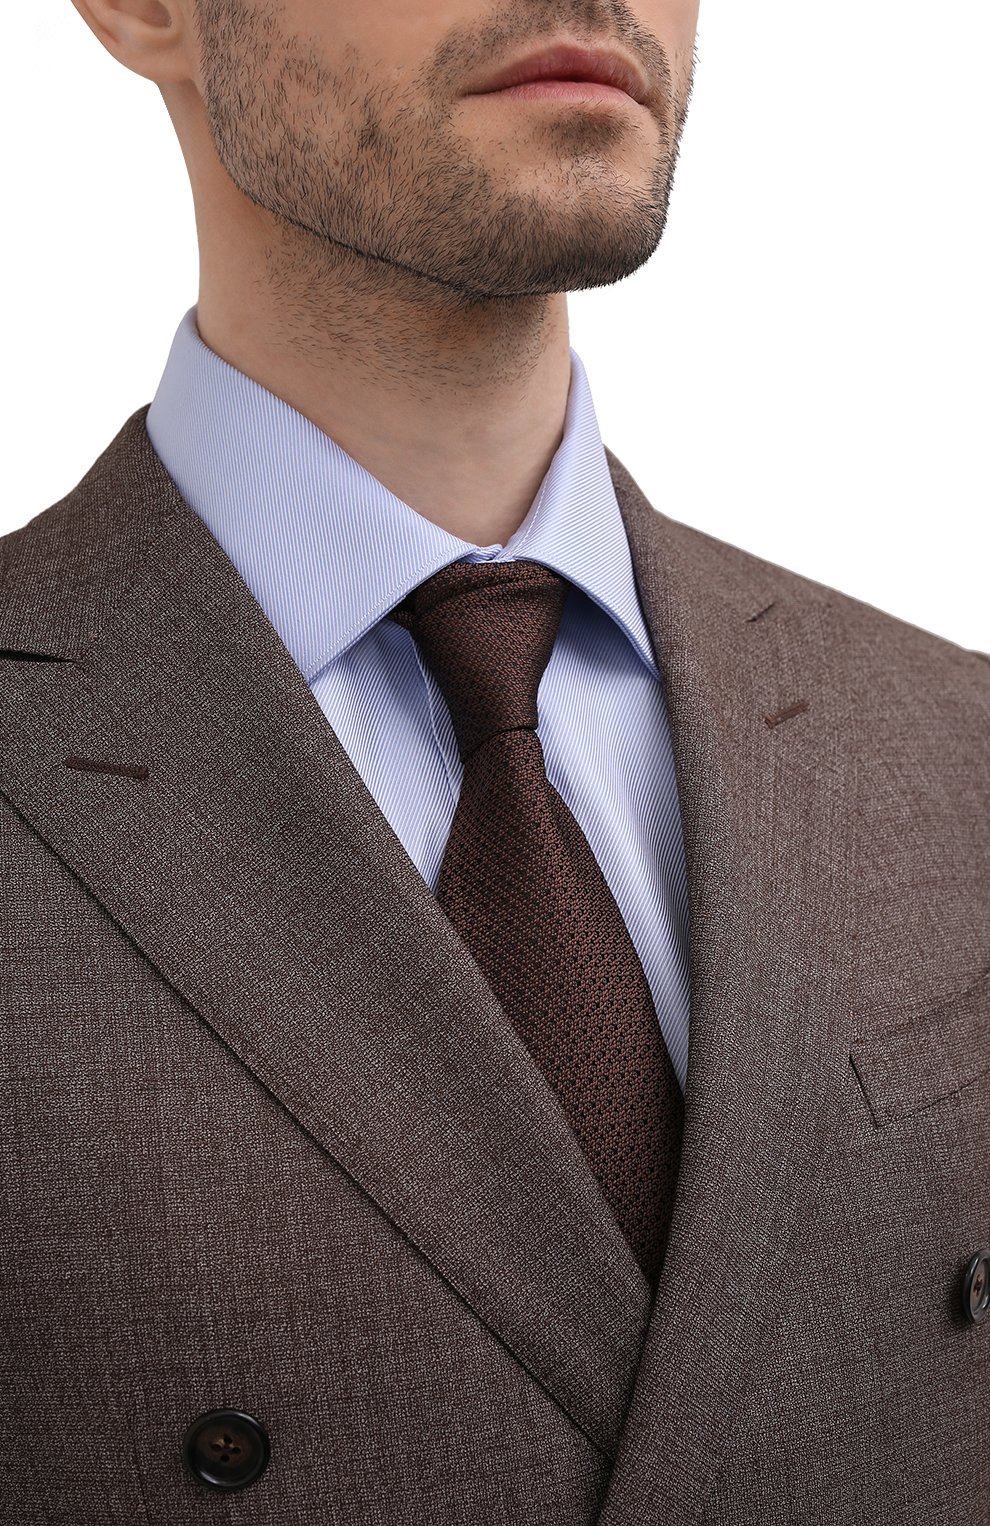 Мужской шелковый галстук BRIONI коричневого цвета, арт. 061D00/P1412 | Фото 2 (Принт: С принтом; Материал: Текстиль, Шелк)